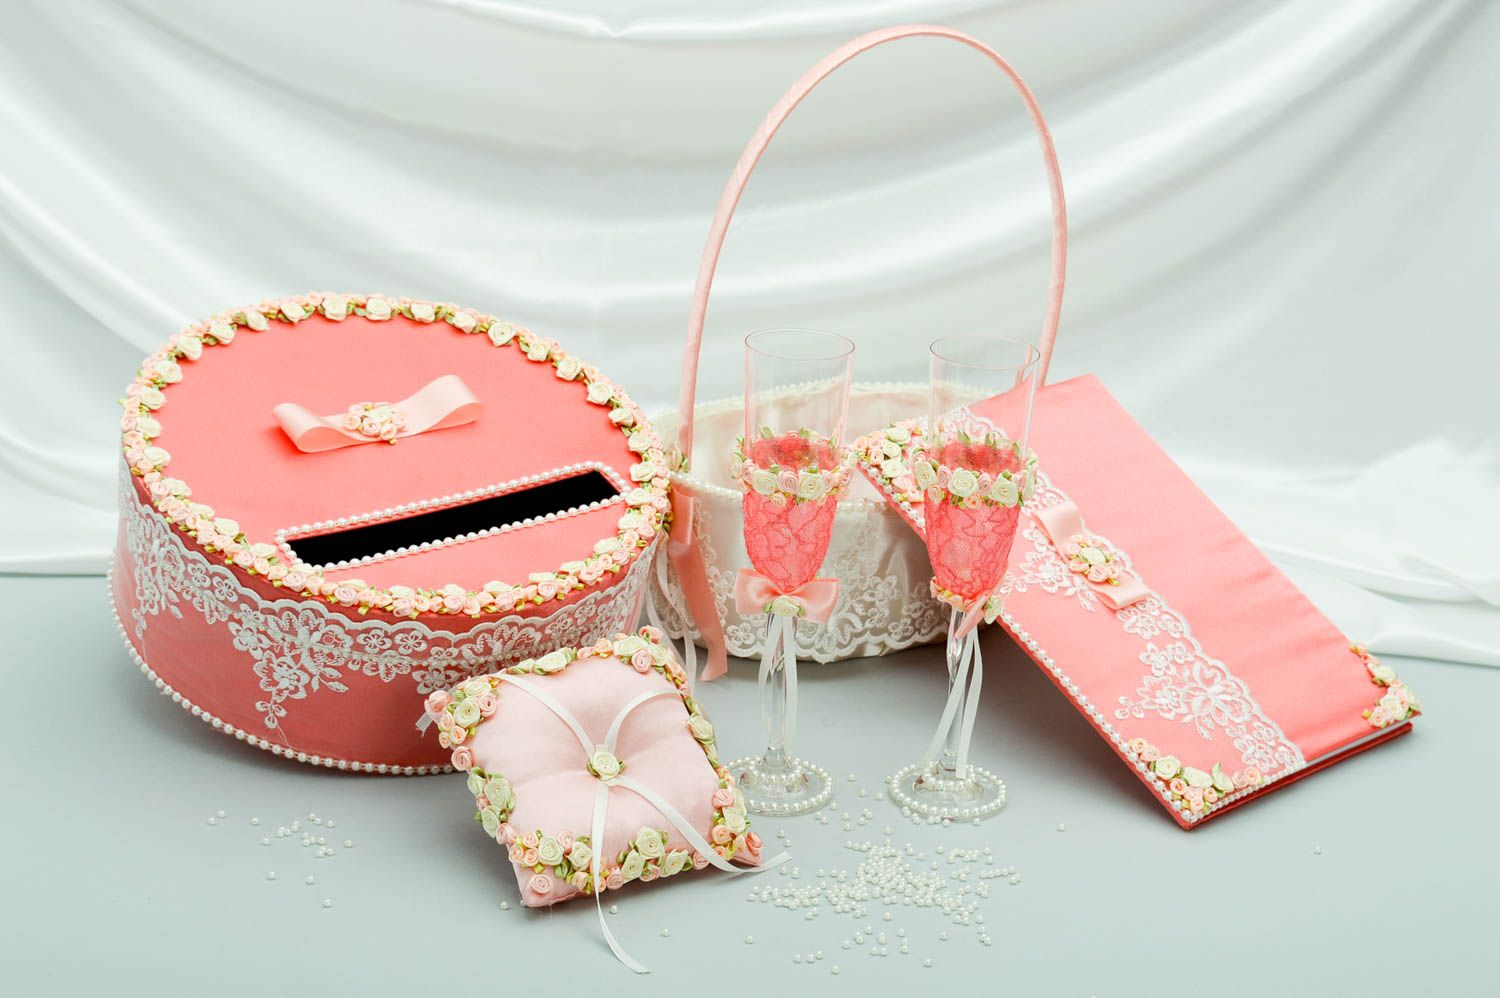 Handmade Geld Box Ring Kissen Gläser Blumenkorb und Gästebuch alles für Hochzeit foto 1